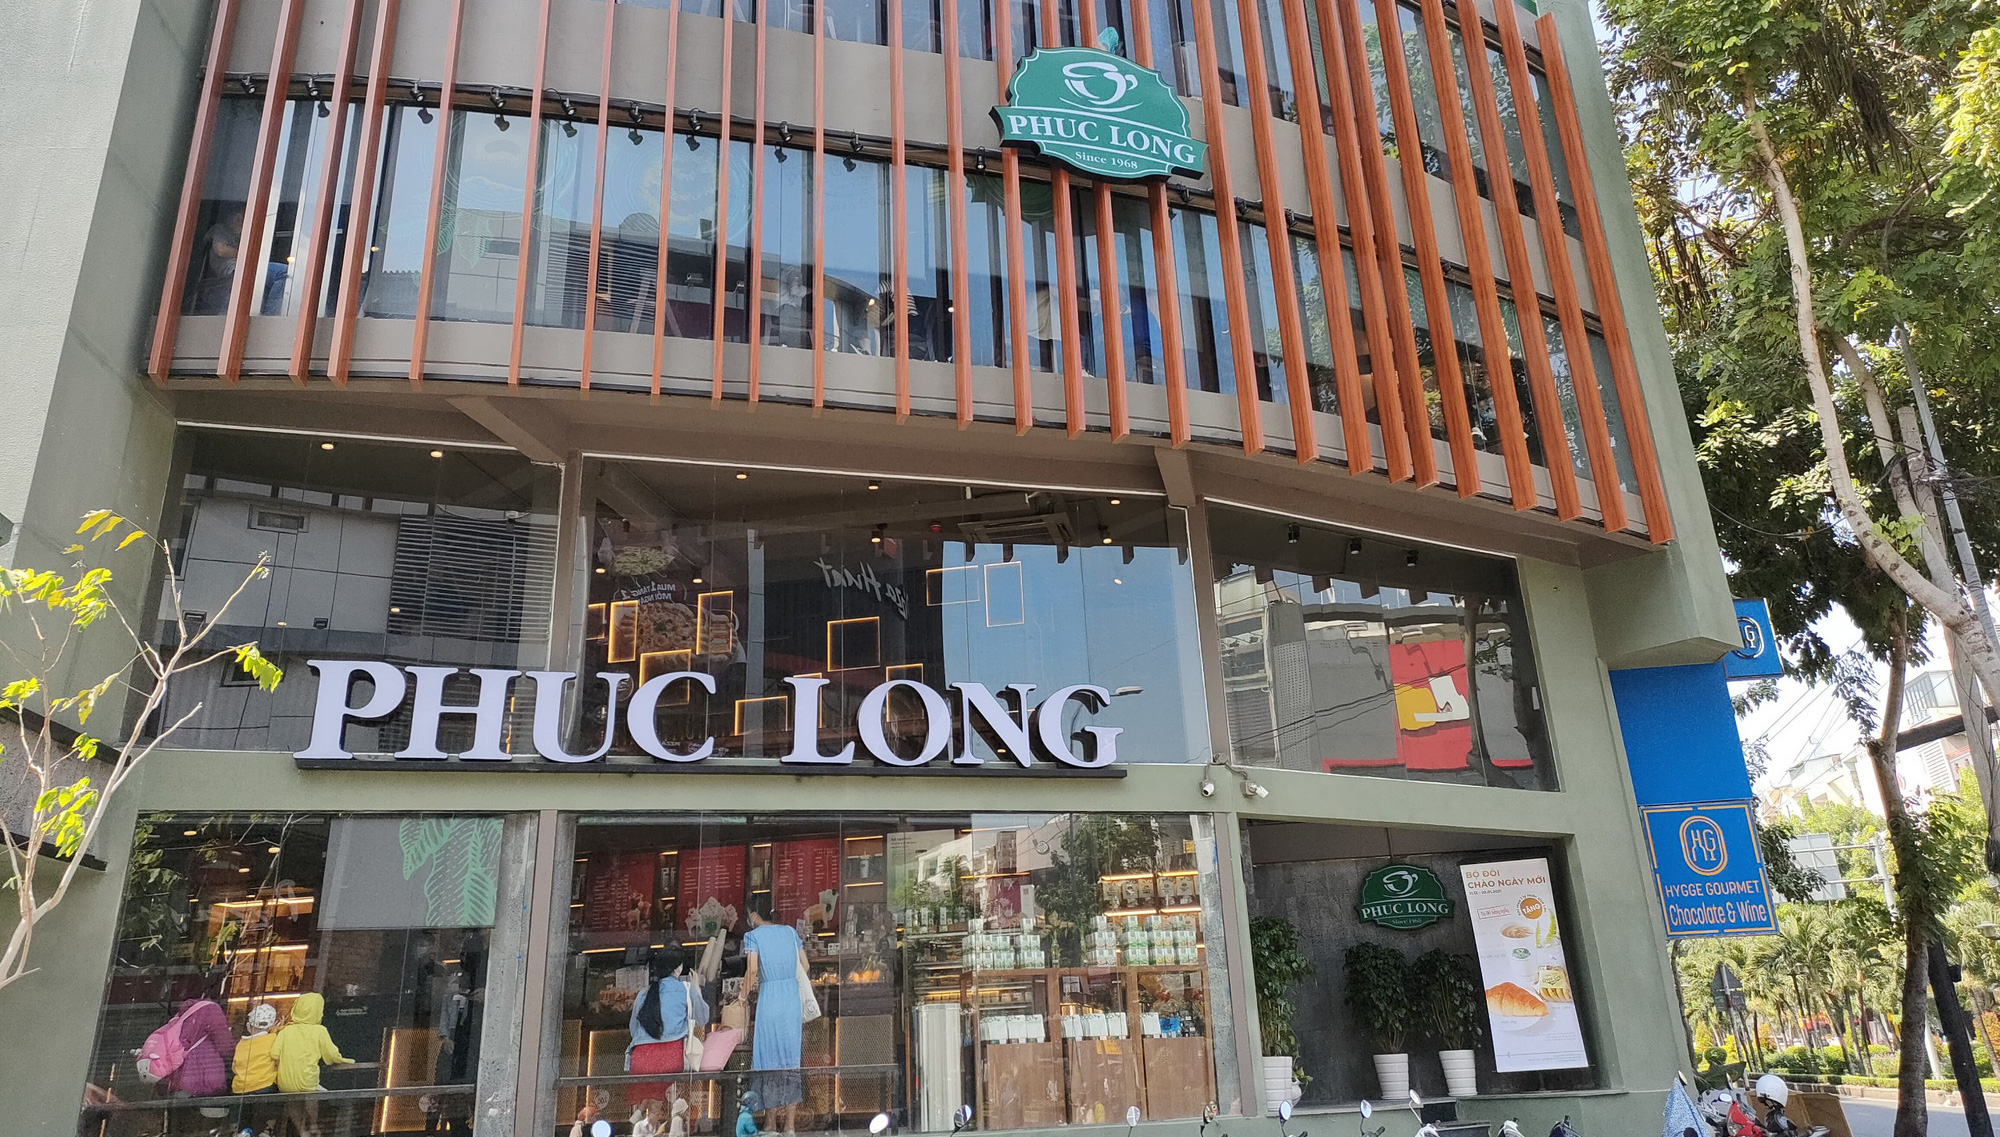 Phúc Long tiết lộ lợi nhuận, tự tin vượt cả Starbucks, Highlands, tính mở thêm 90 cửa hàng mới - Ảnh 1.